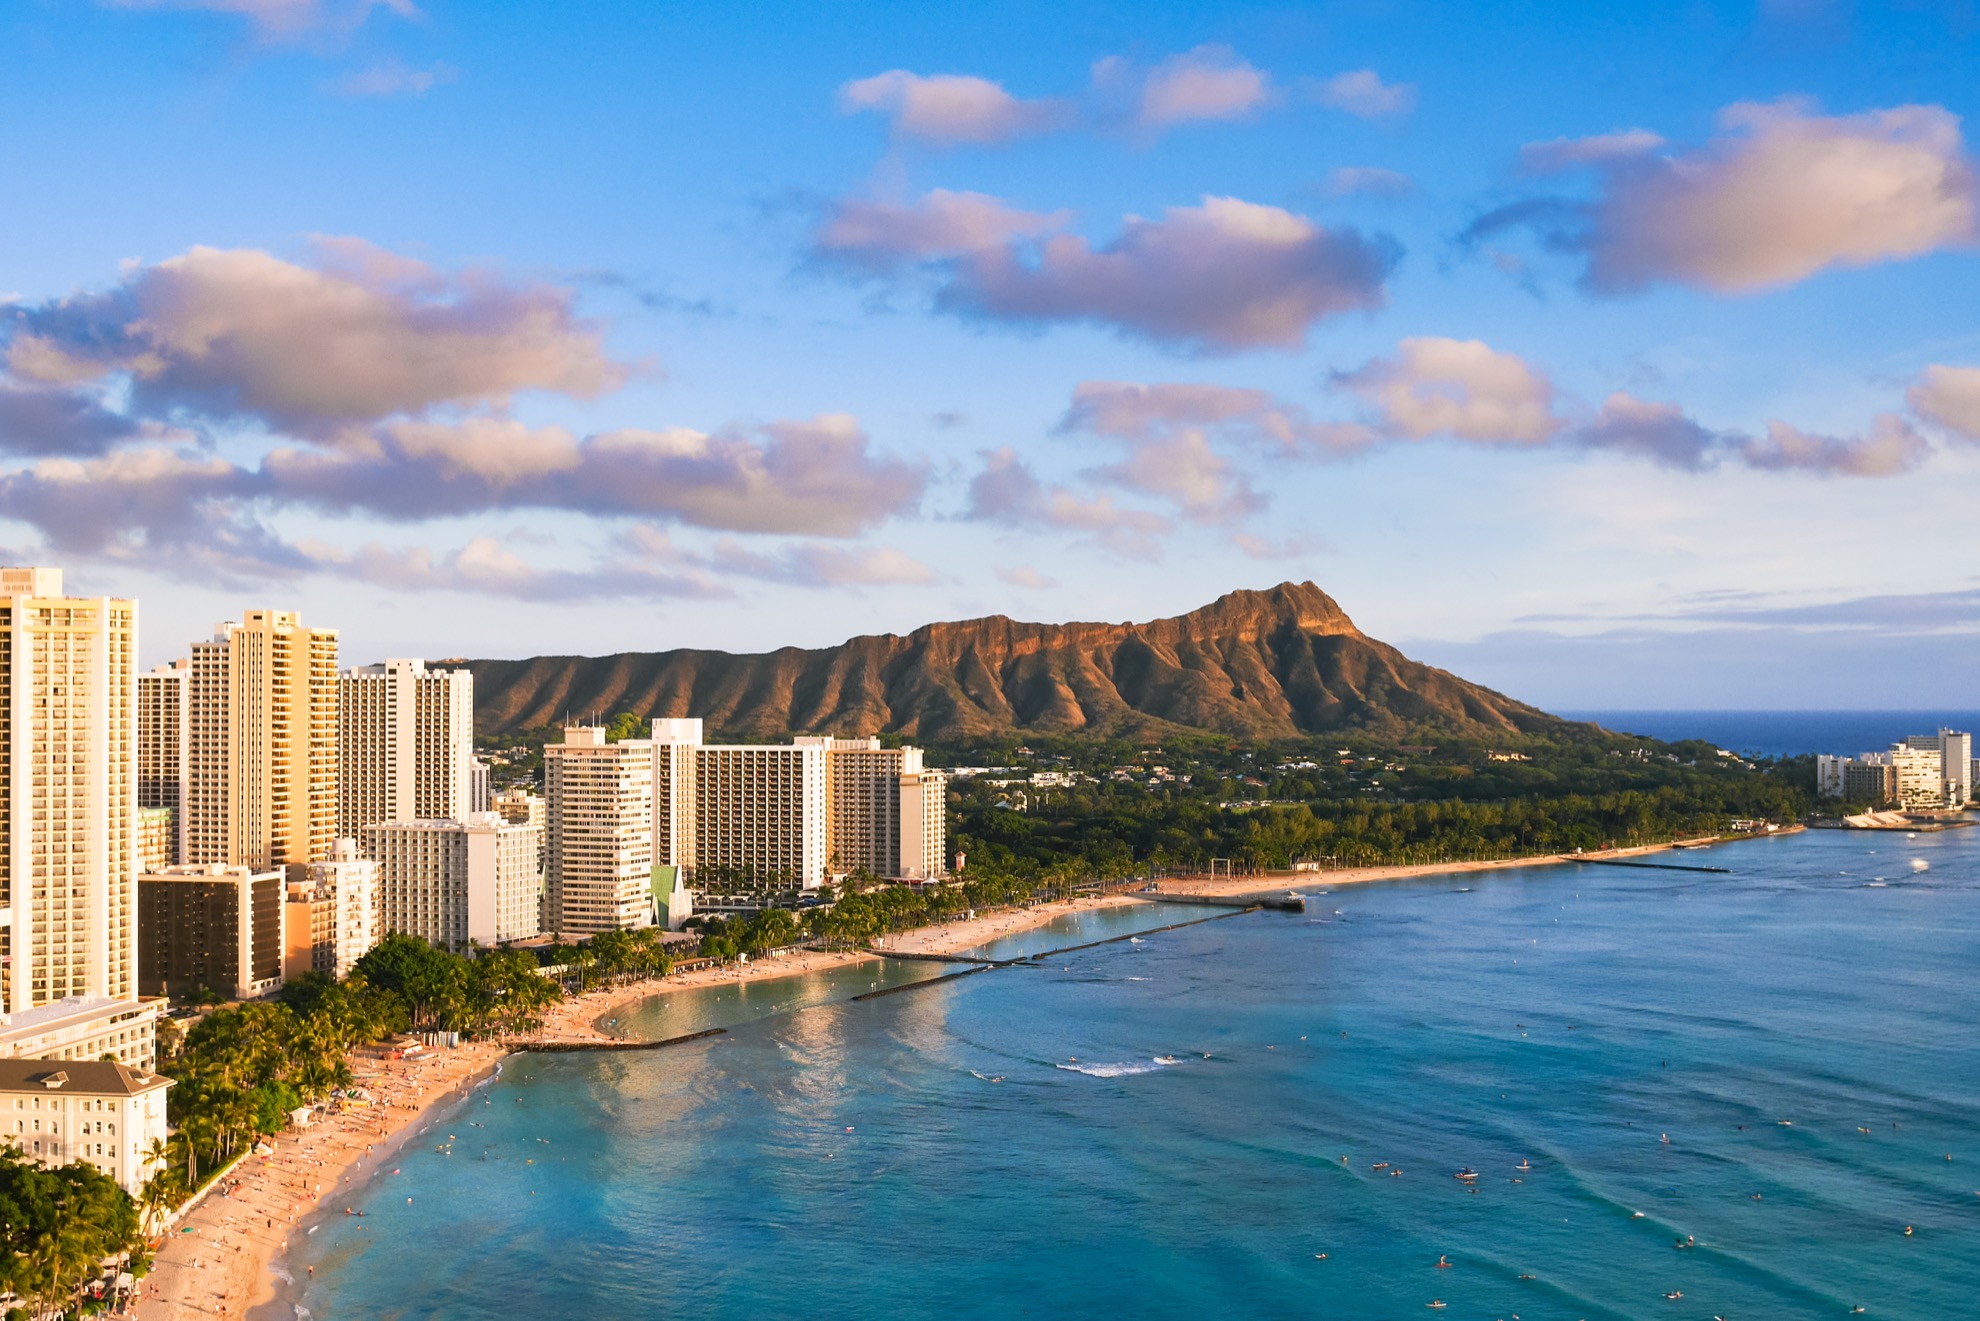 7 cosas que debe saber antes de visitar Diamond Head, Hawaii - 11